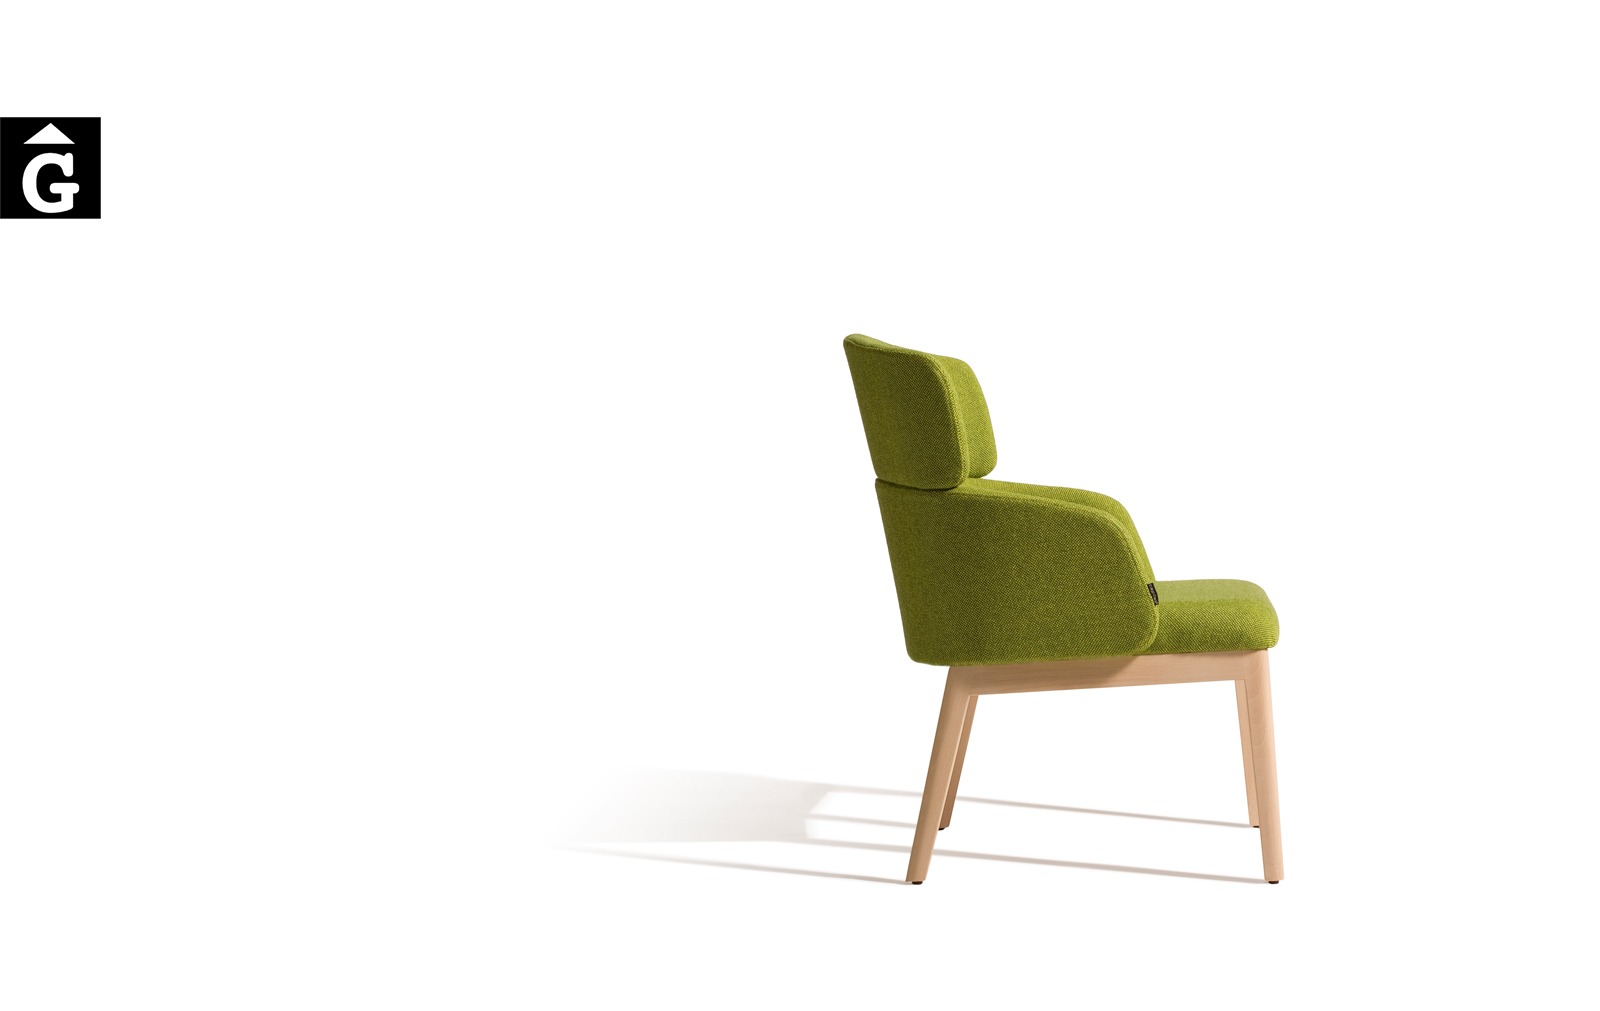 525 UM Perfil Capdell by mobles Gifreu Girona cadires sillons butaques de molt alta qualitat